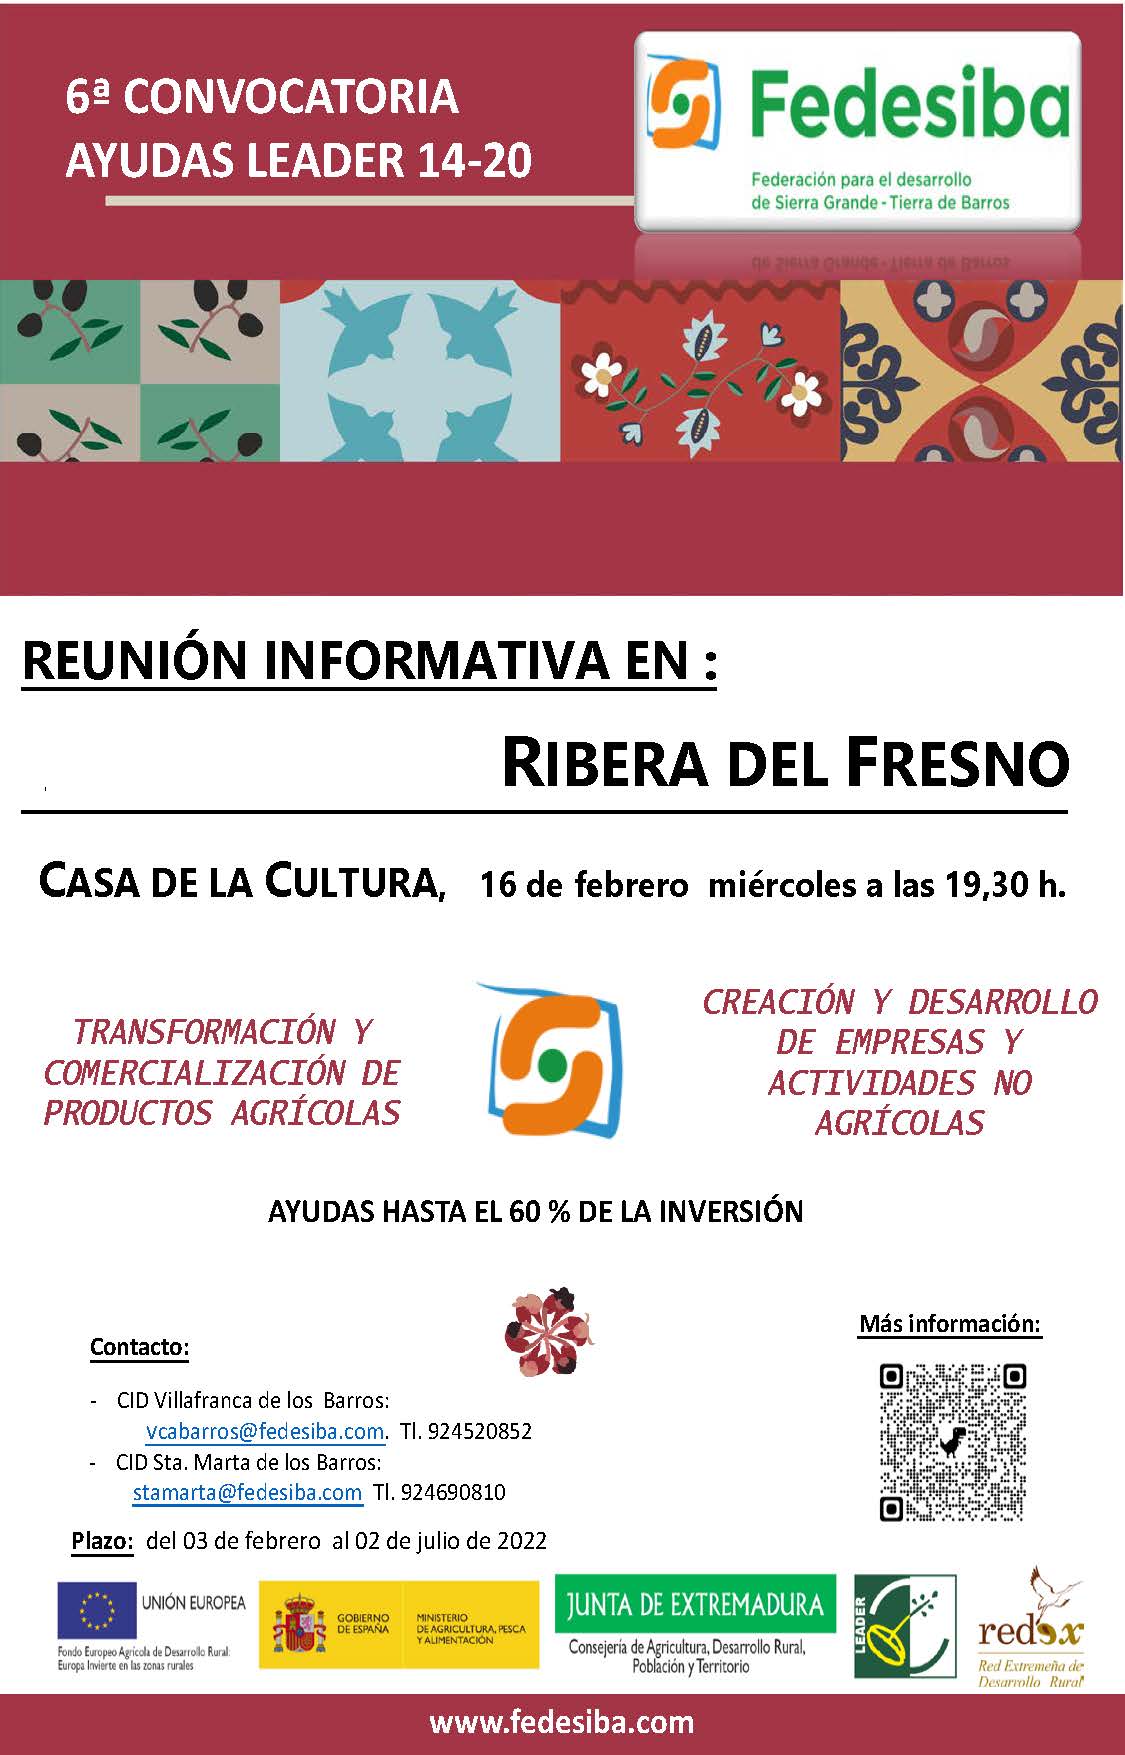 Reunión informativa 6ª convocatoria ayudas LEADER de FEDESIBA en Ribera del Fresno, día 16/02/2022, miércoles, 19:30 Casa de Cultura